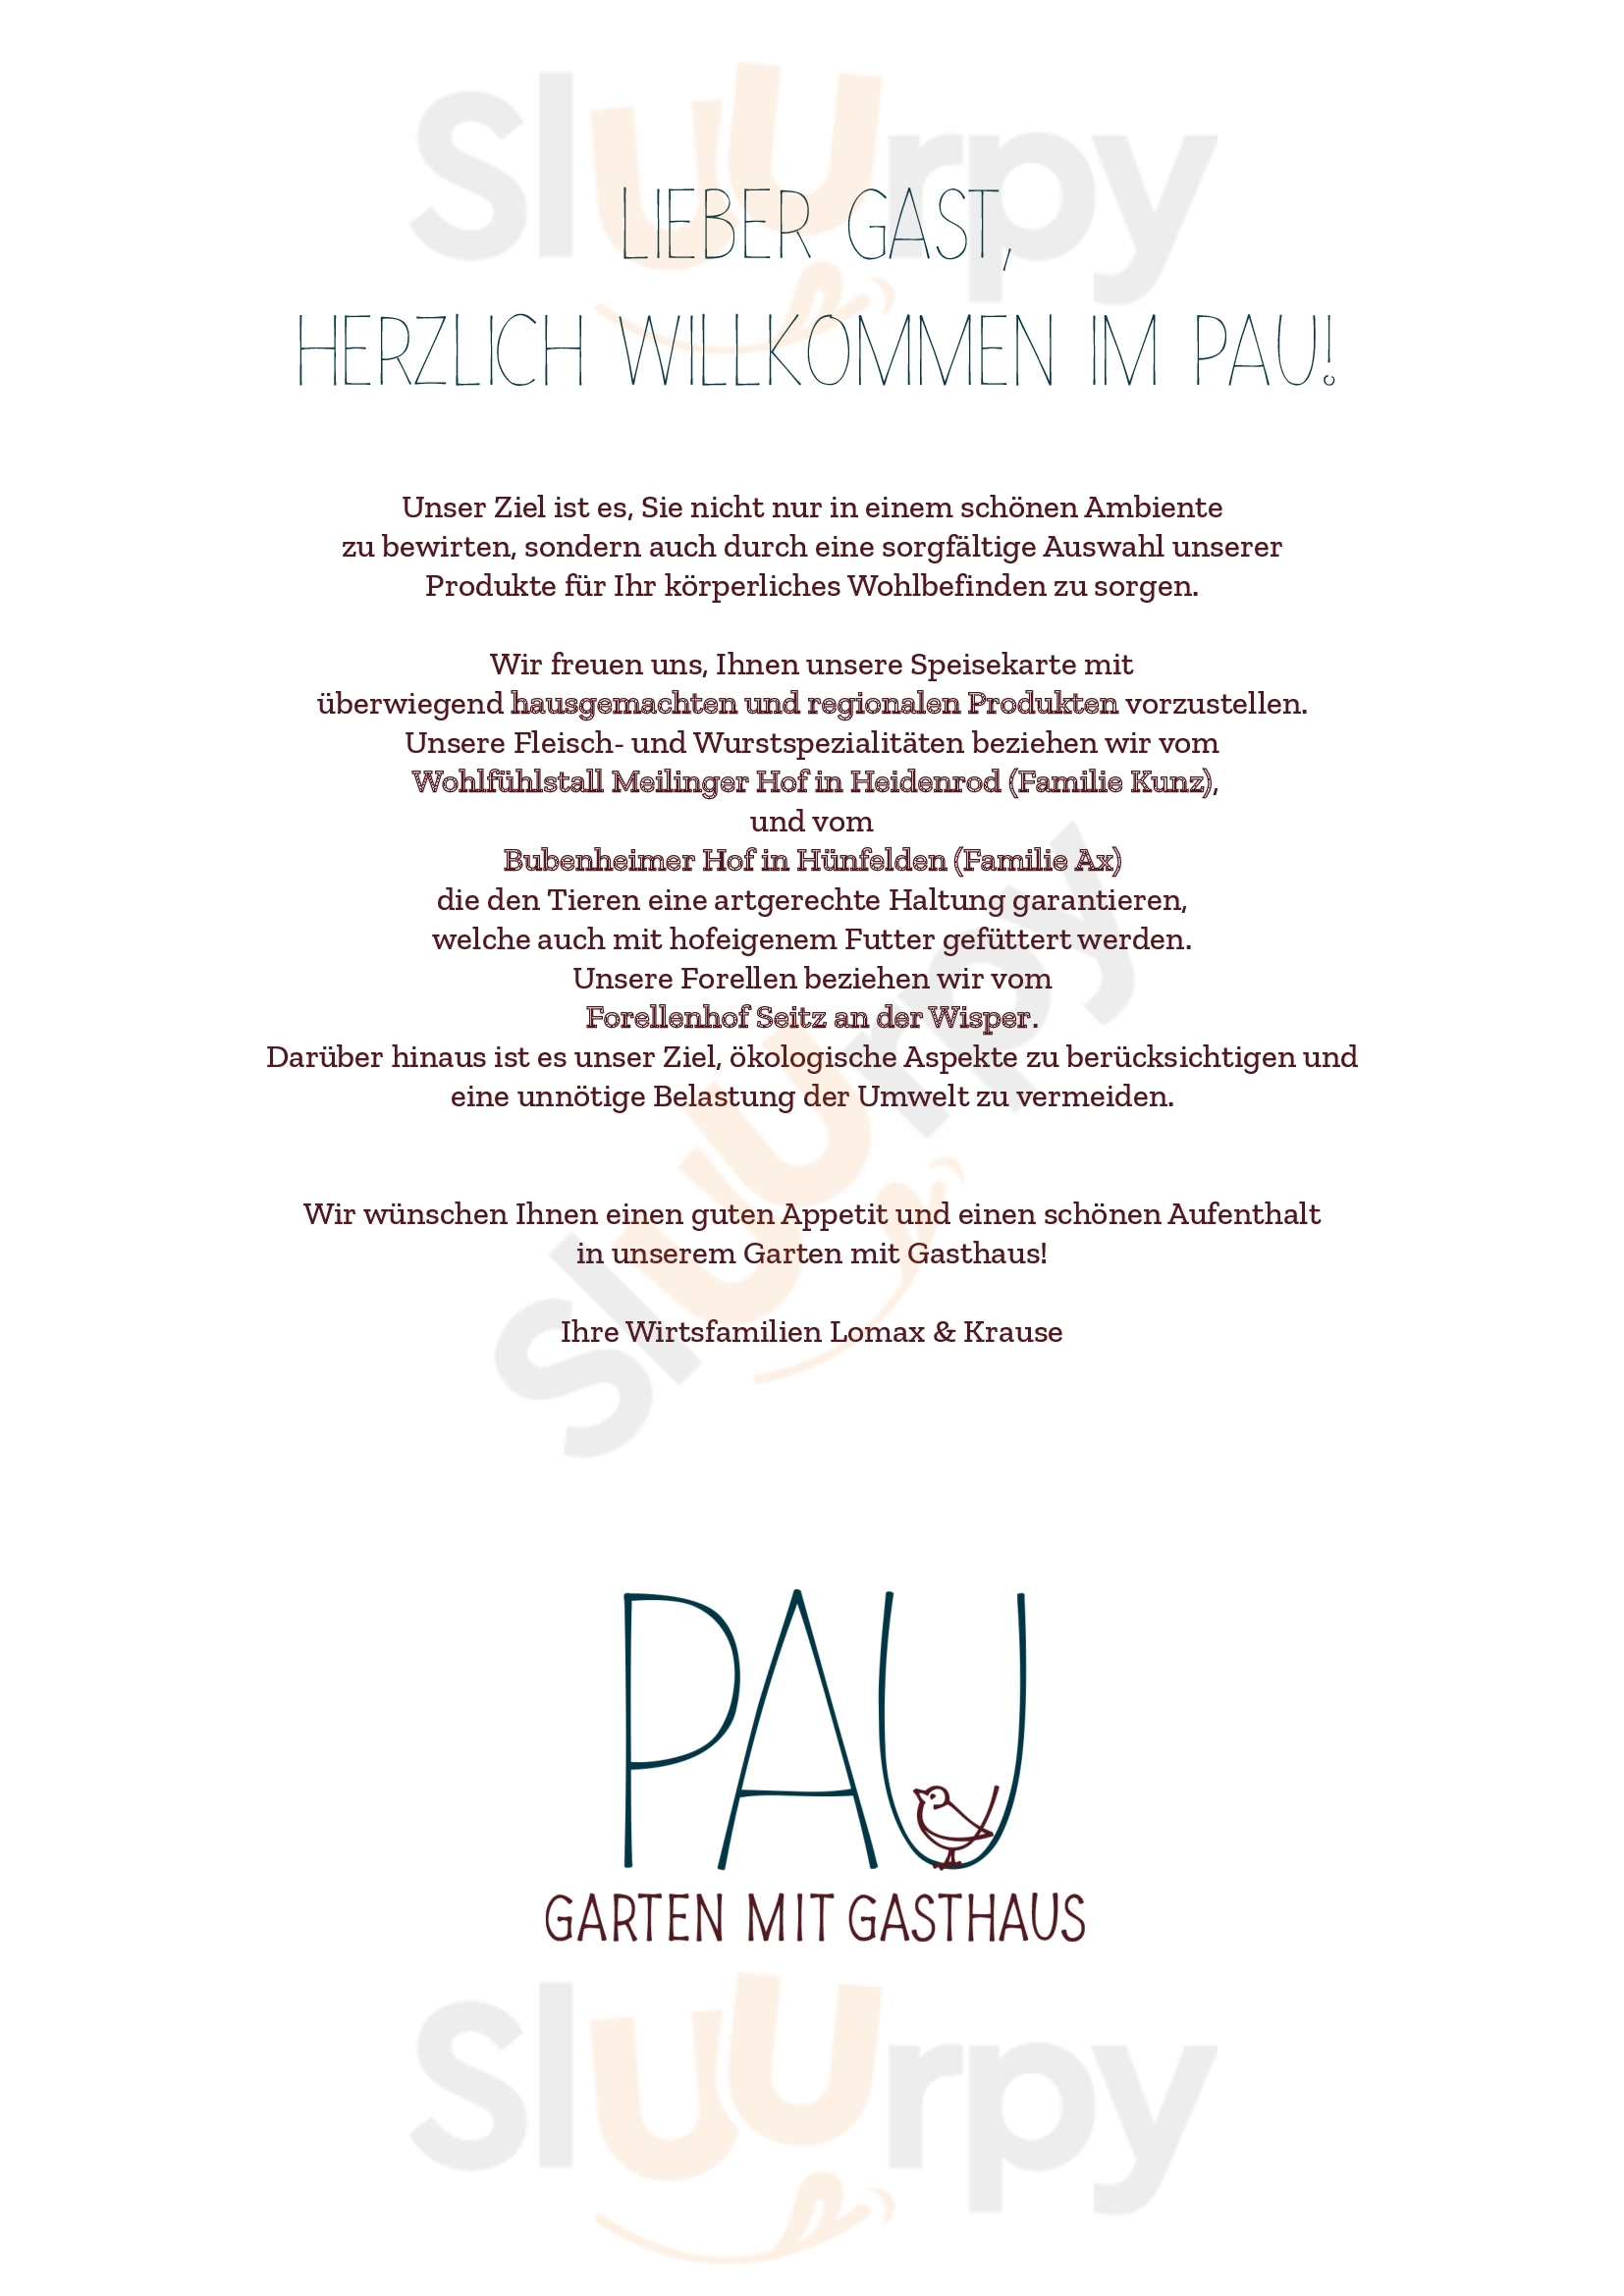 Pau - Garten Mit Gasthaus Wiesbaden Menu - 1